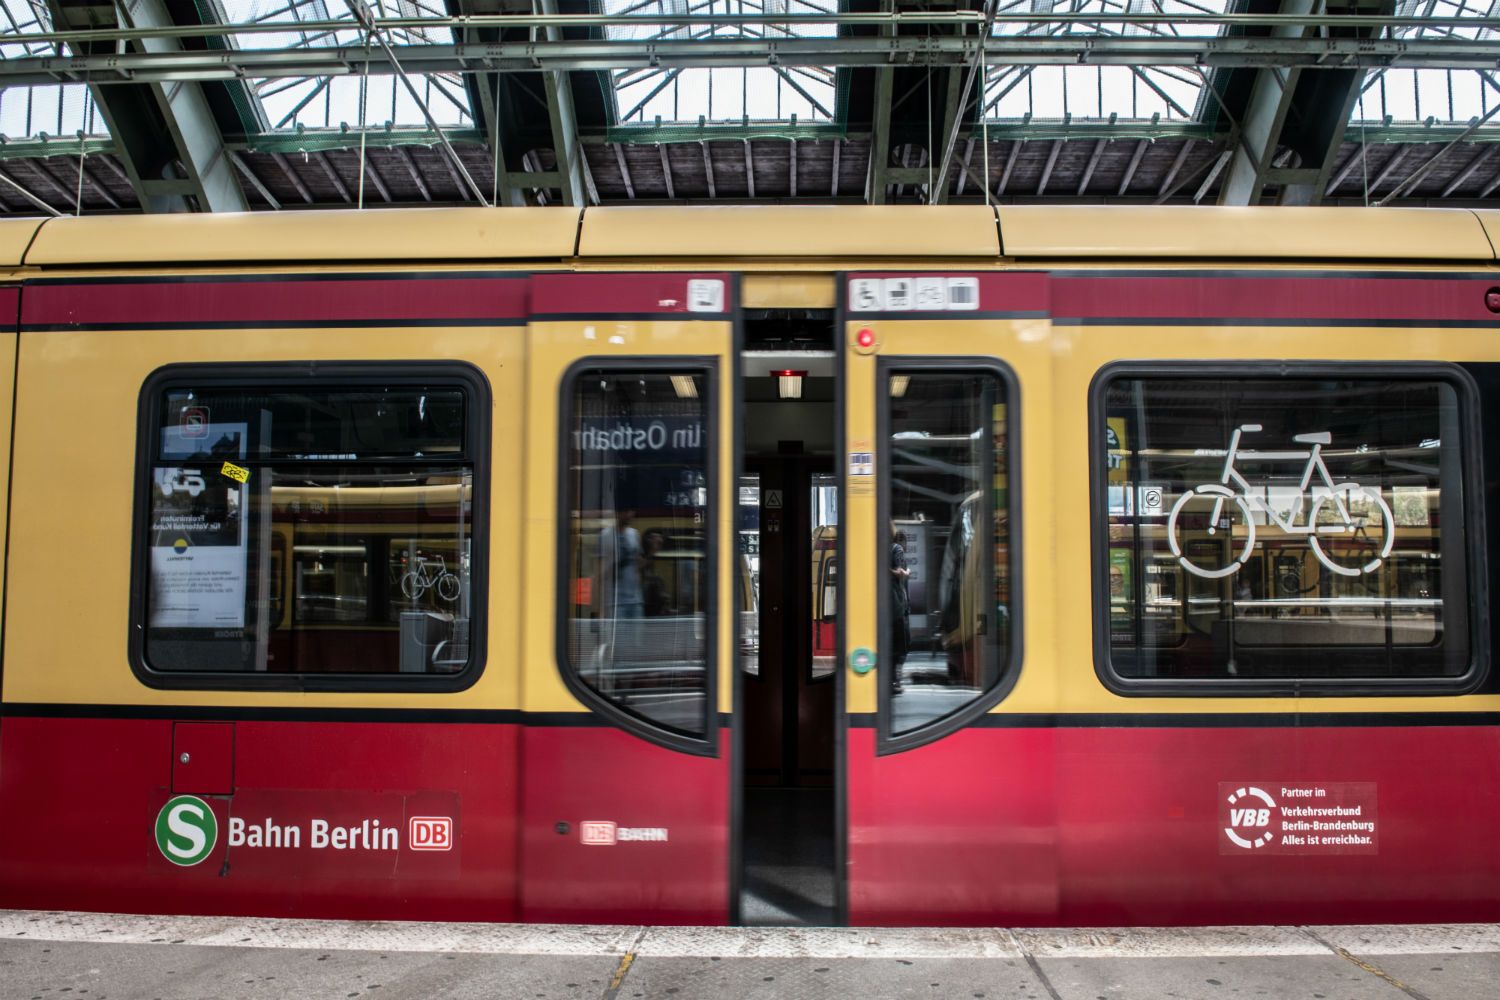 Berlin's transportation system